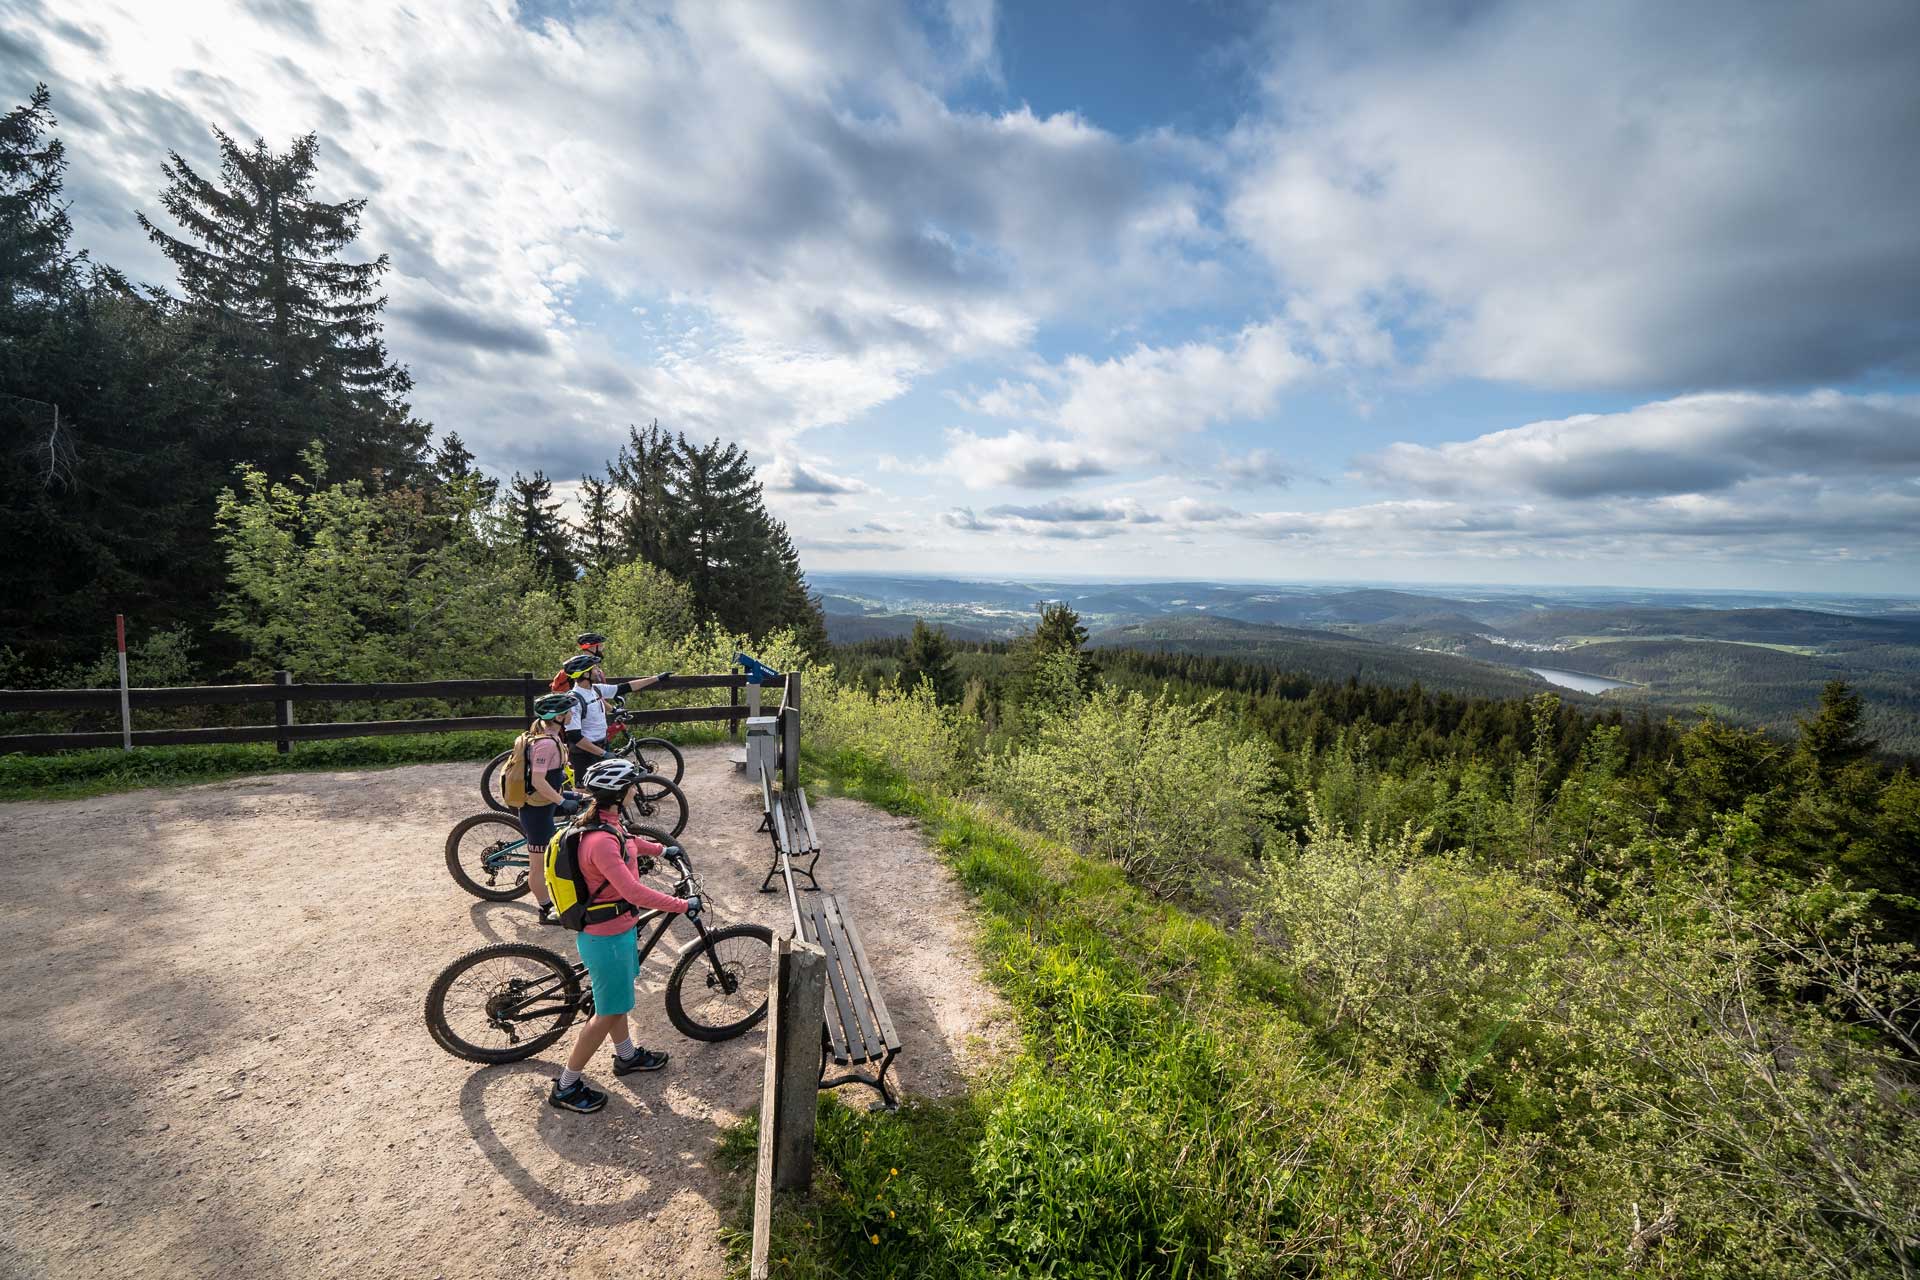 Radfahrer an Aussichtspunkt mit Blick auf Tal